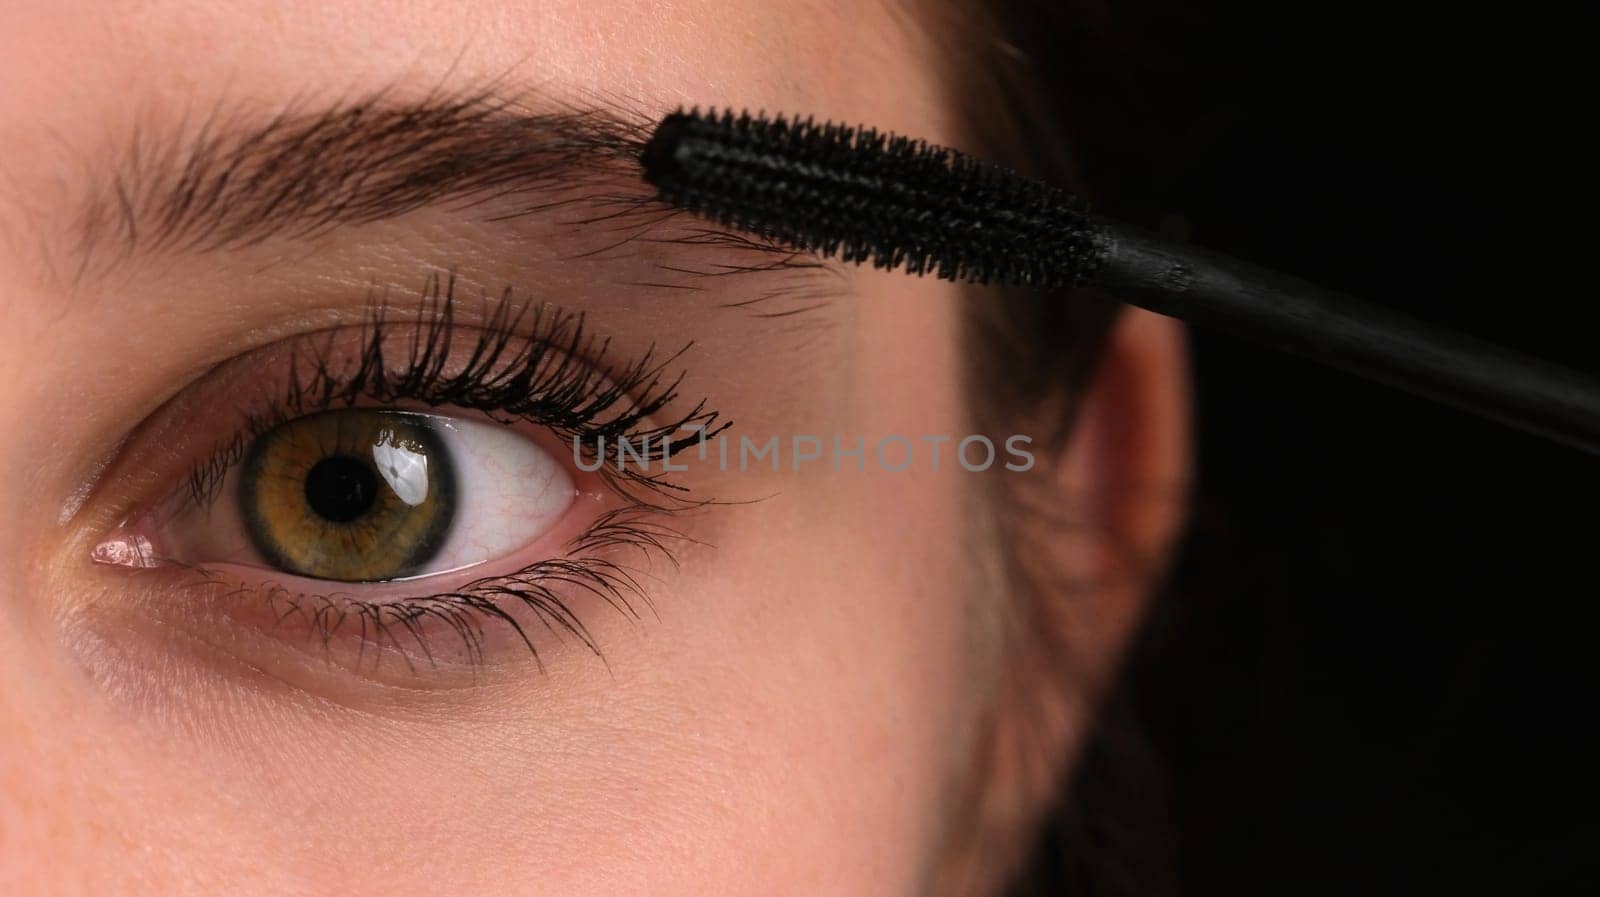 Girl Making Makeup Using Black Mascara On Her Long Eyelashes, Close Up View by GekaSkr